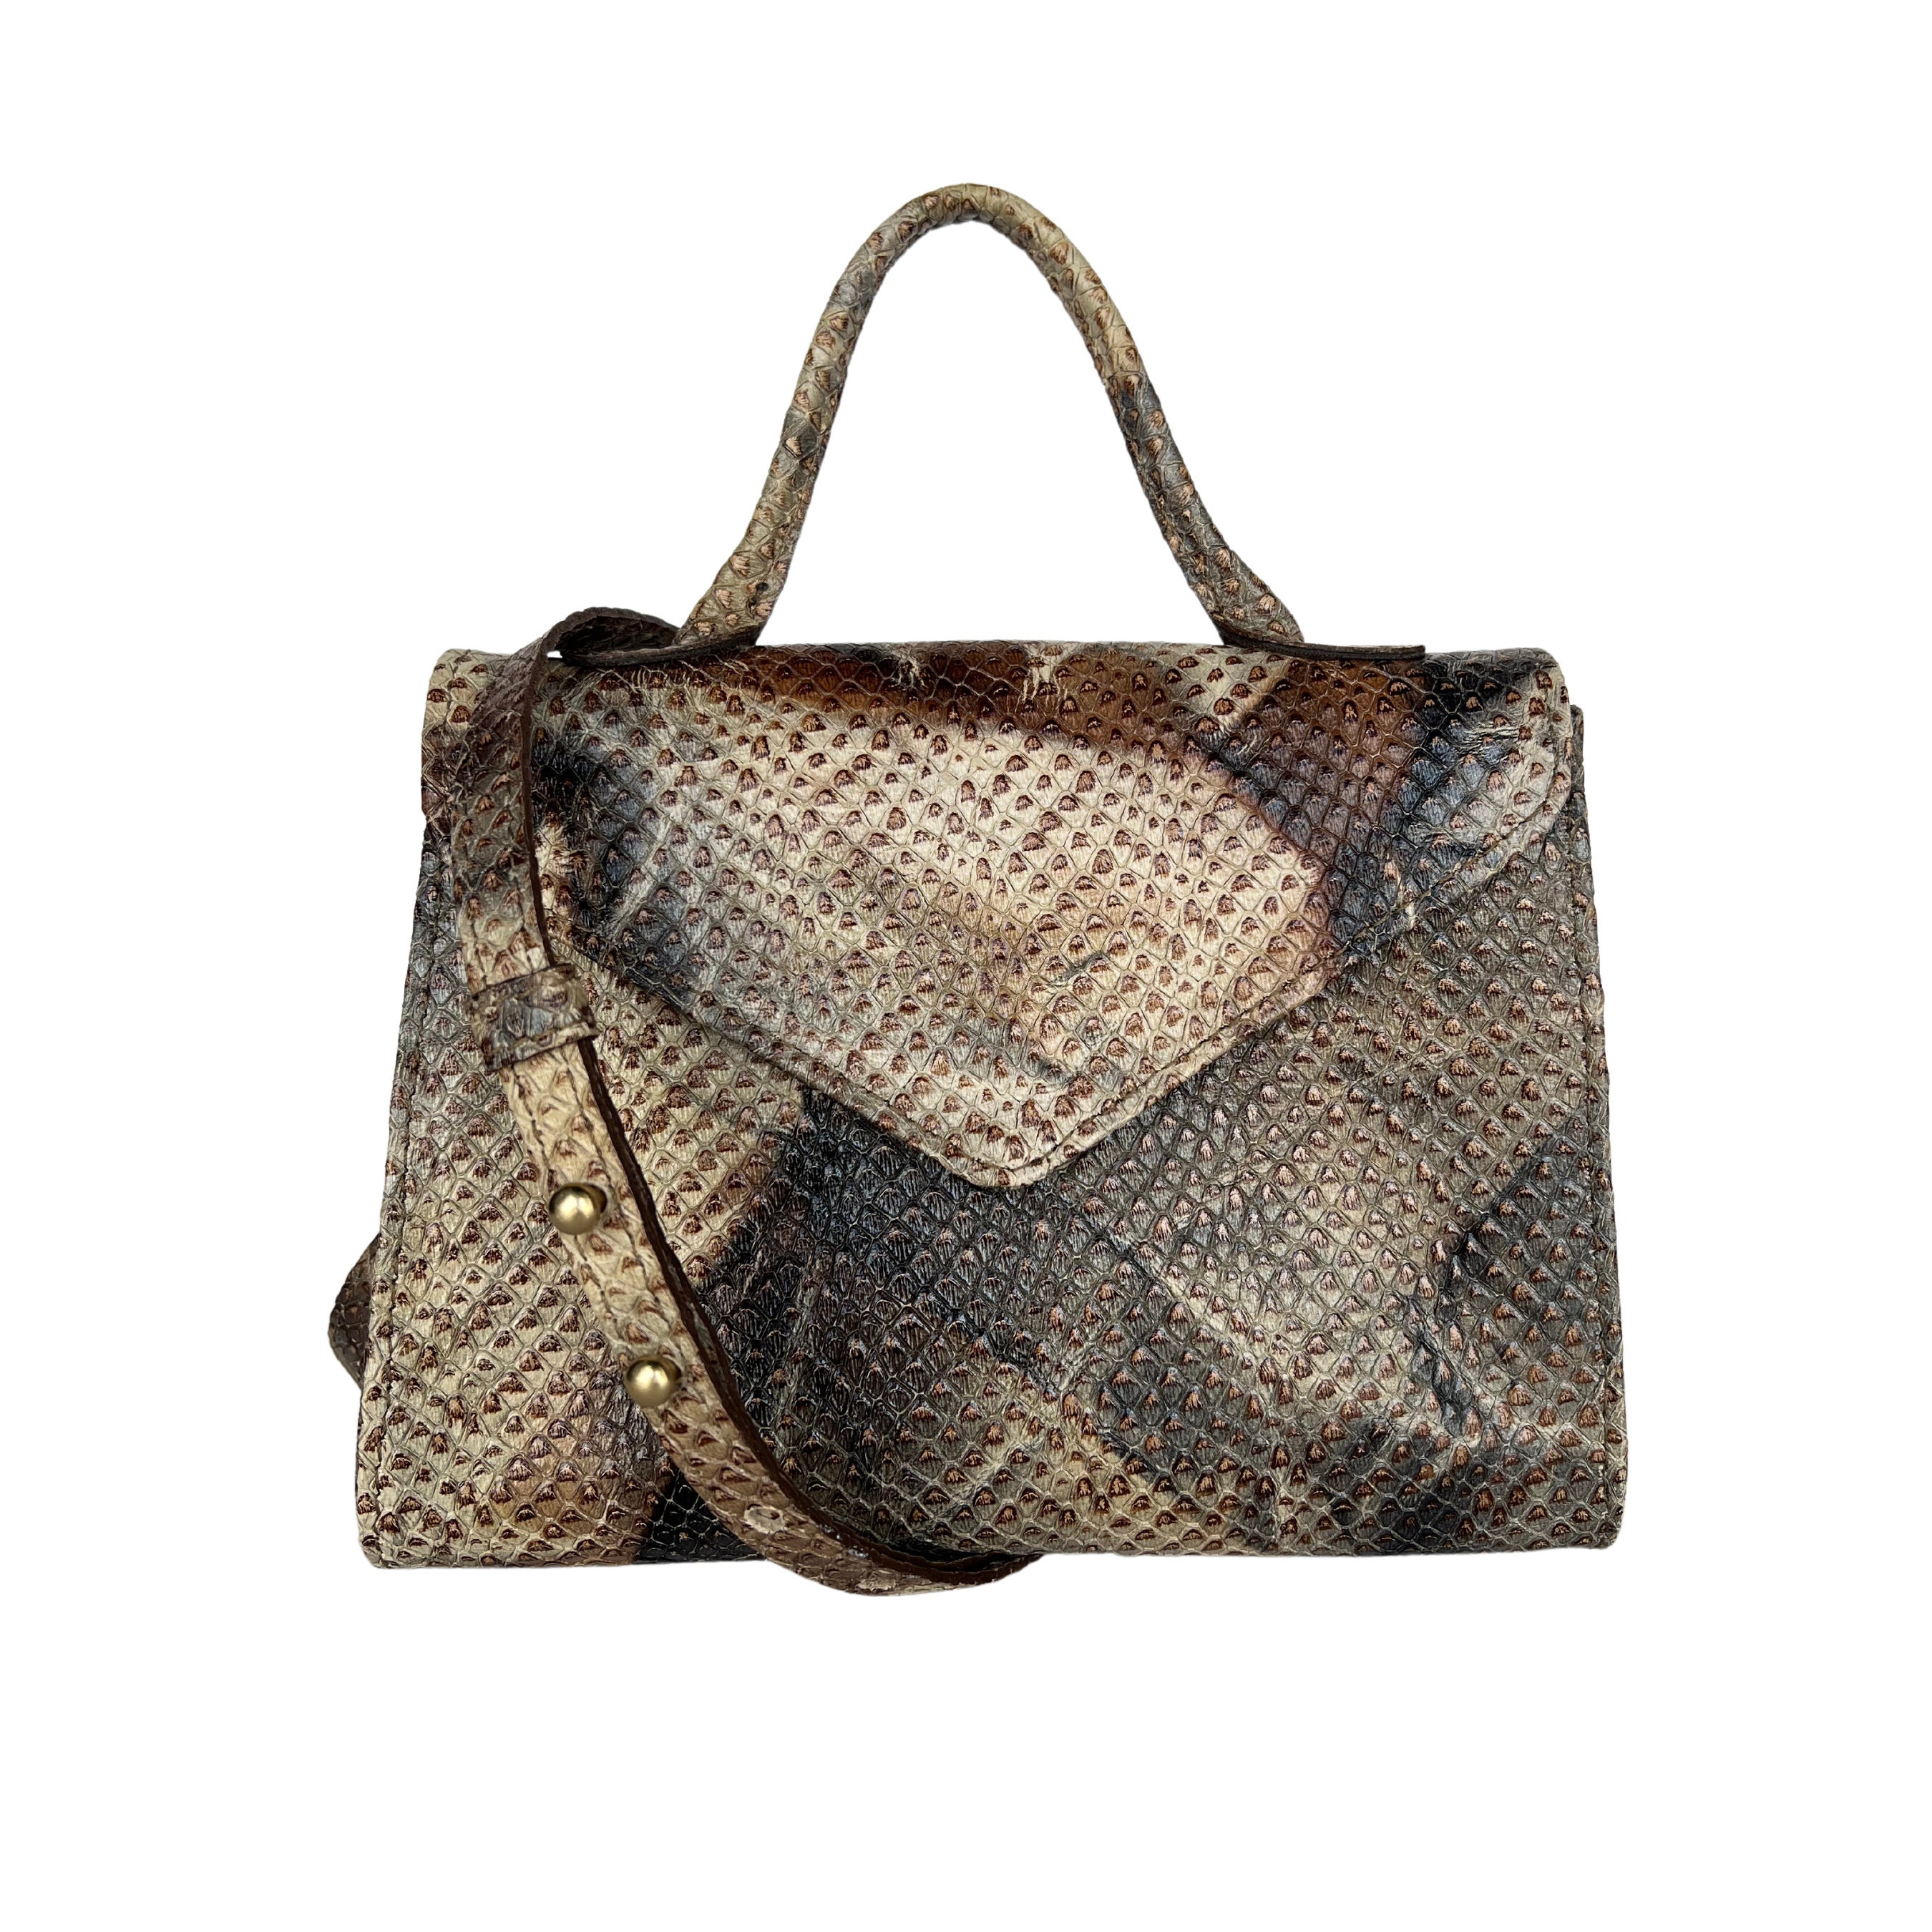 snakeskin bag price